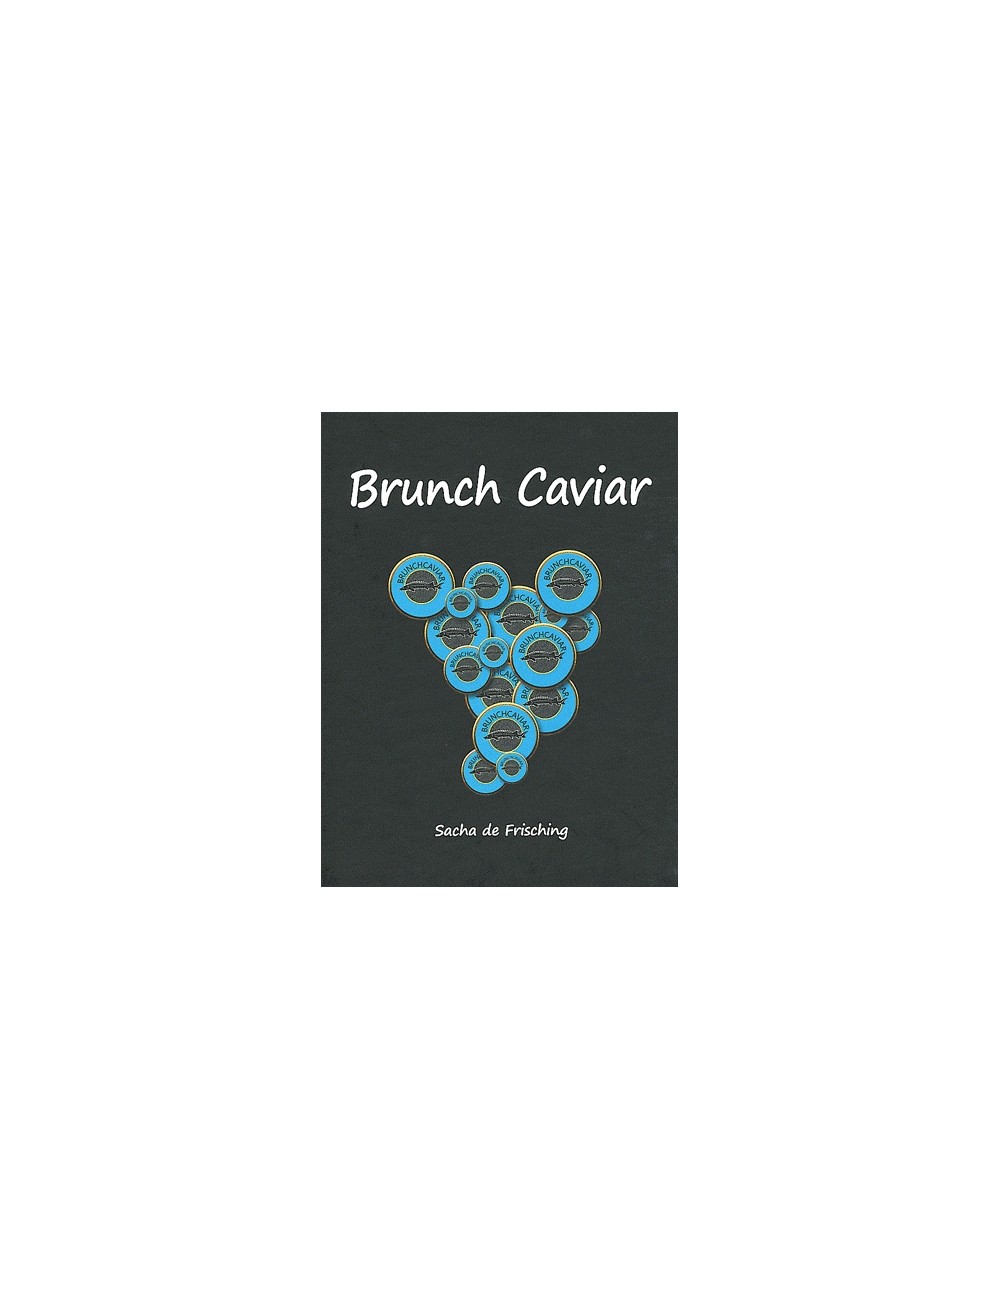 Livre de recette "Brunch Caviar"